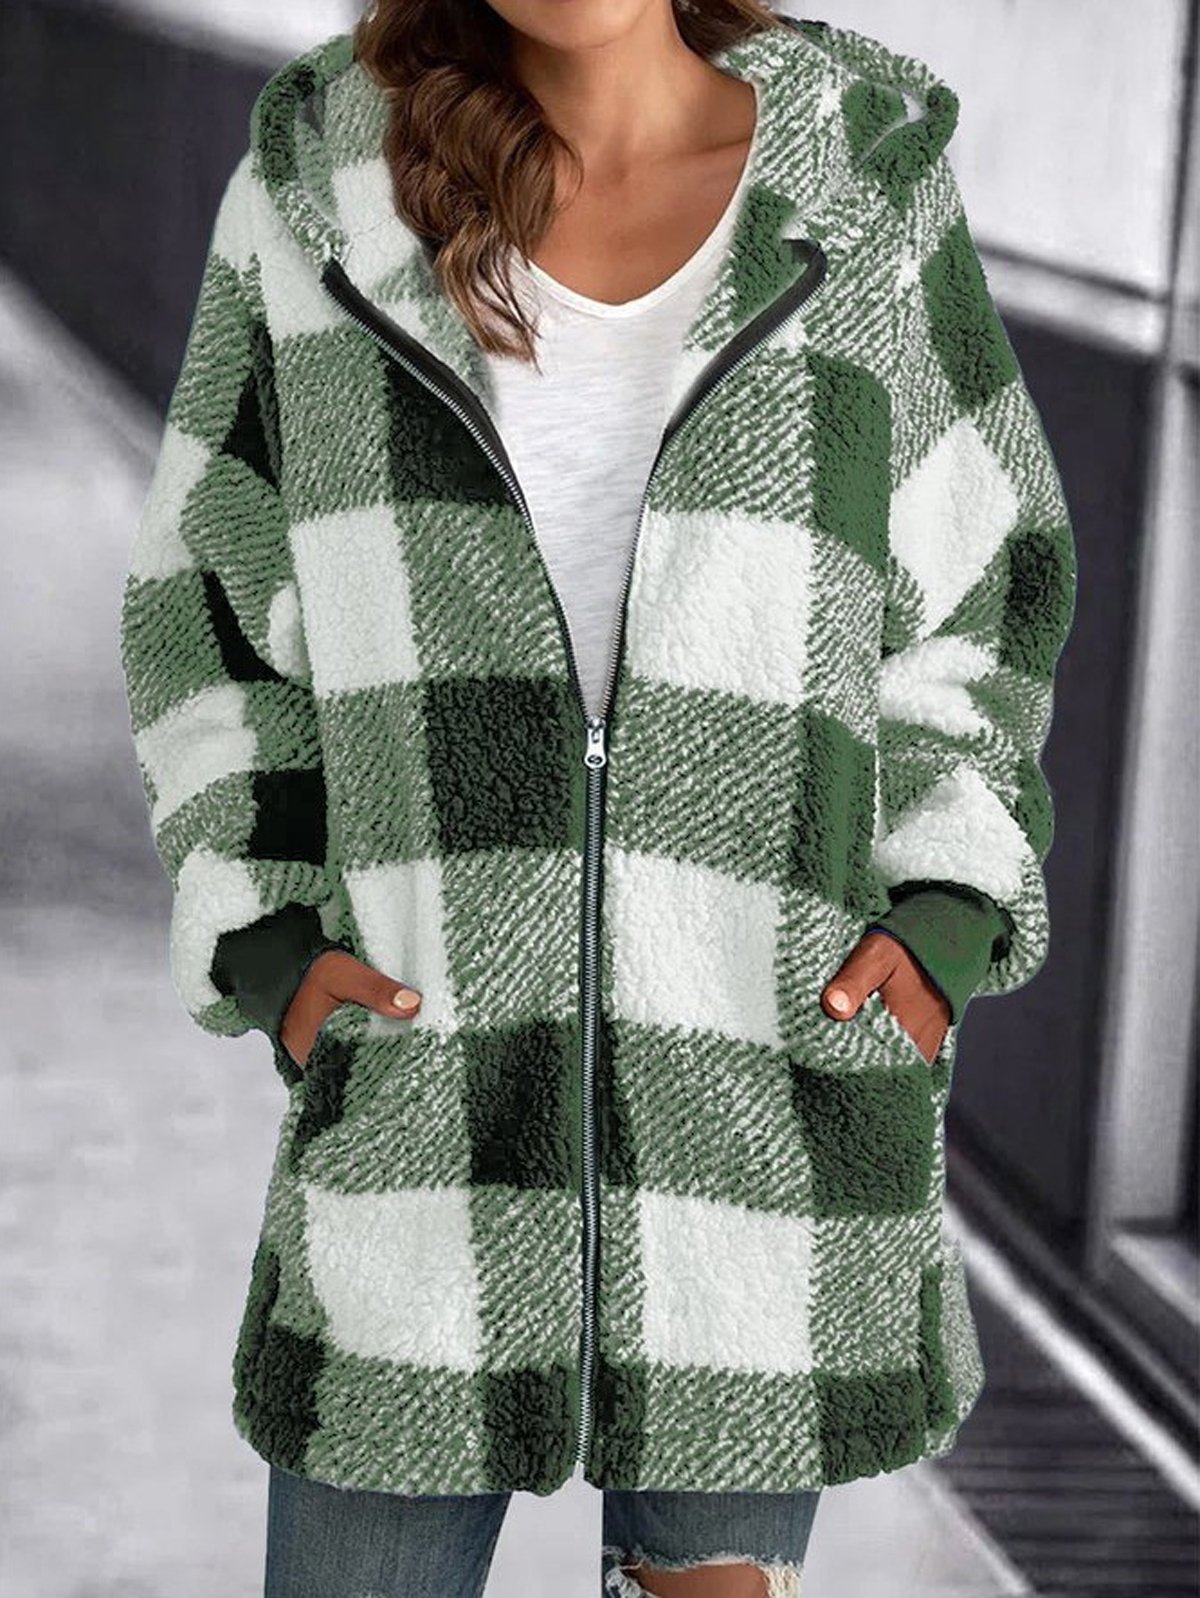 Women's Fleece Jacket Warm Sherpa Jacket with Pocket Plaid Teddy Coat Turndown Plush Casual Street Outerwear Long Sleeve Fall Winter